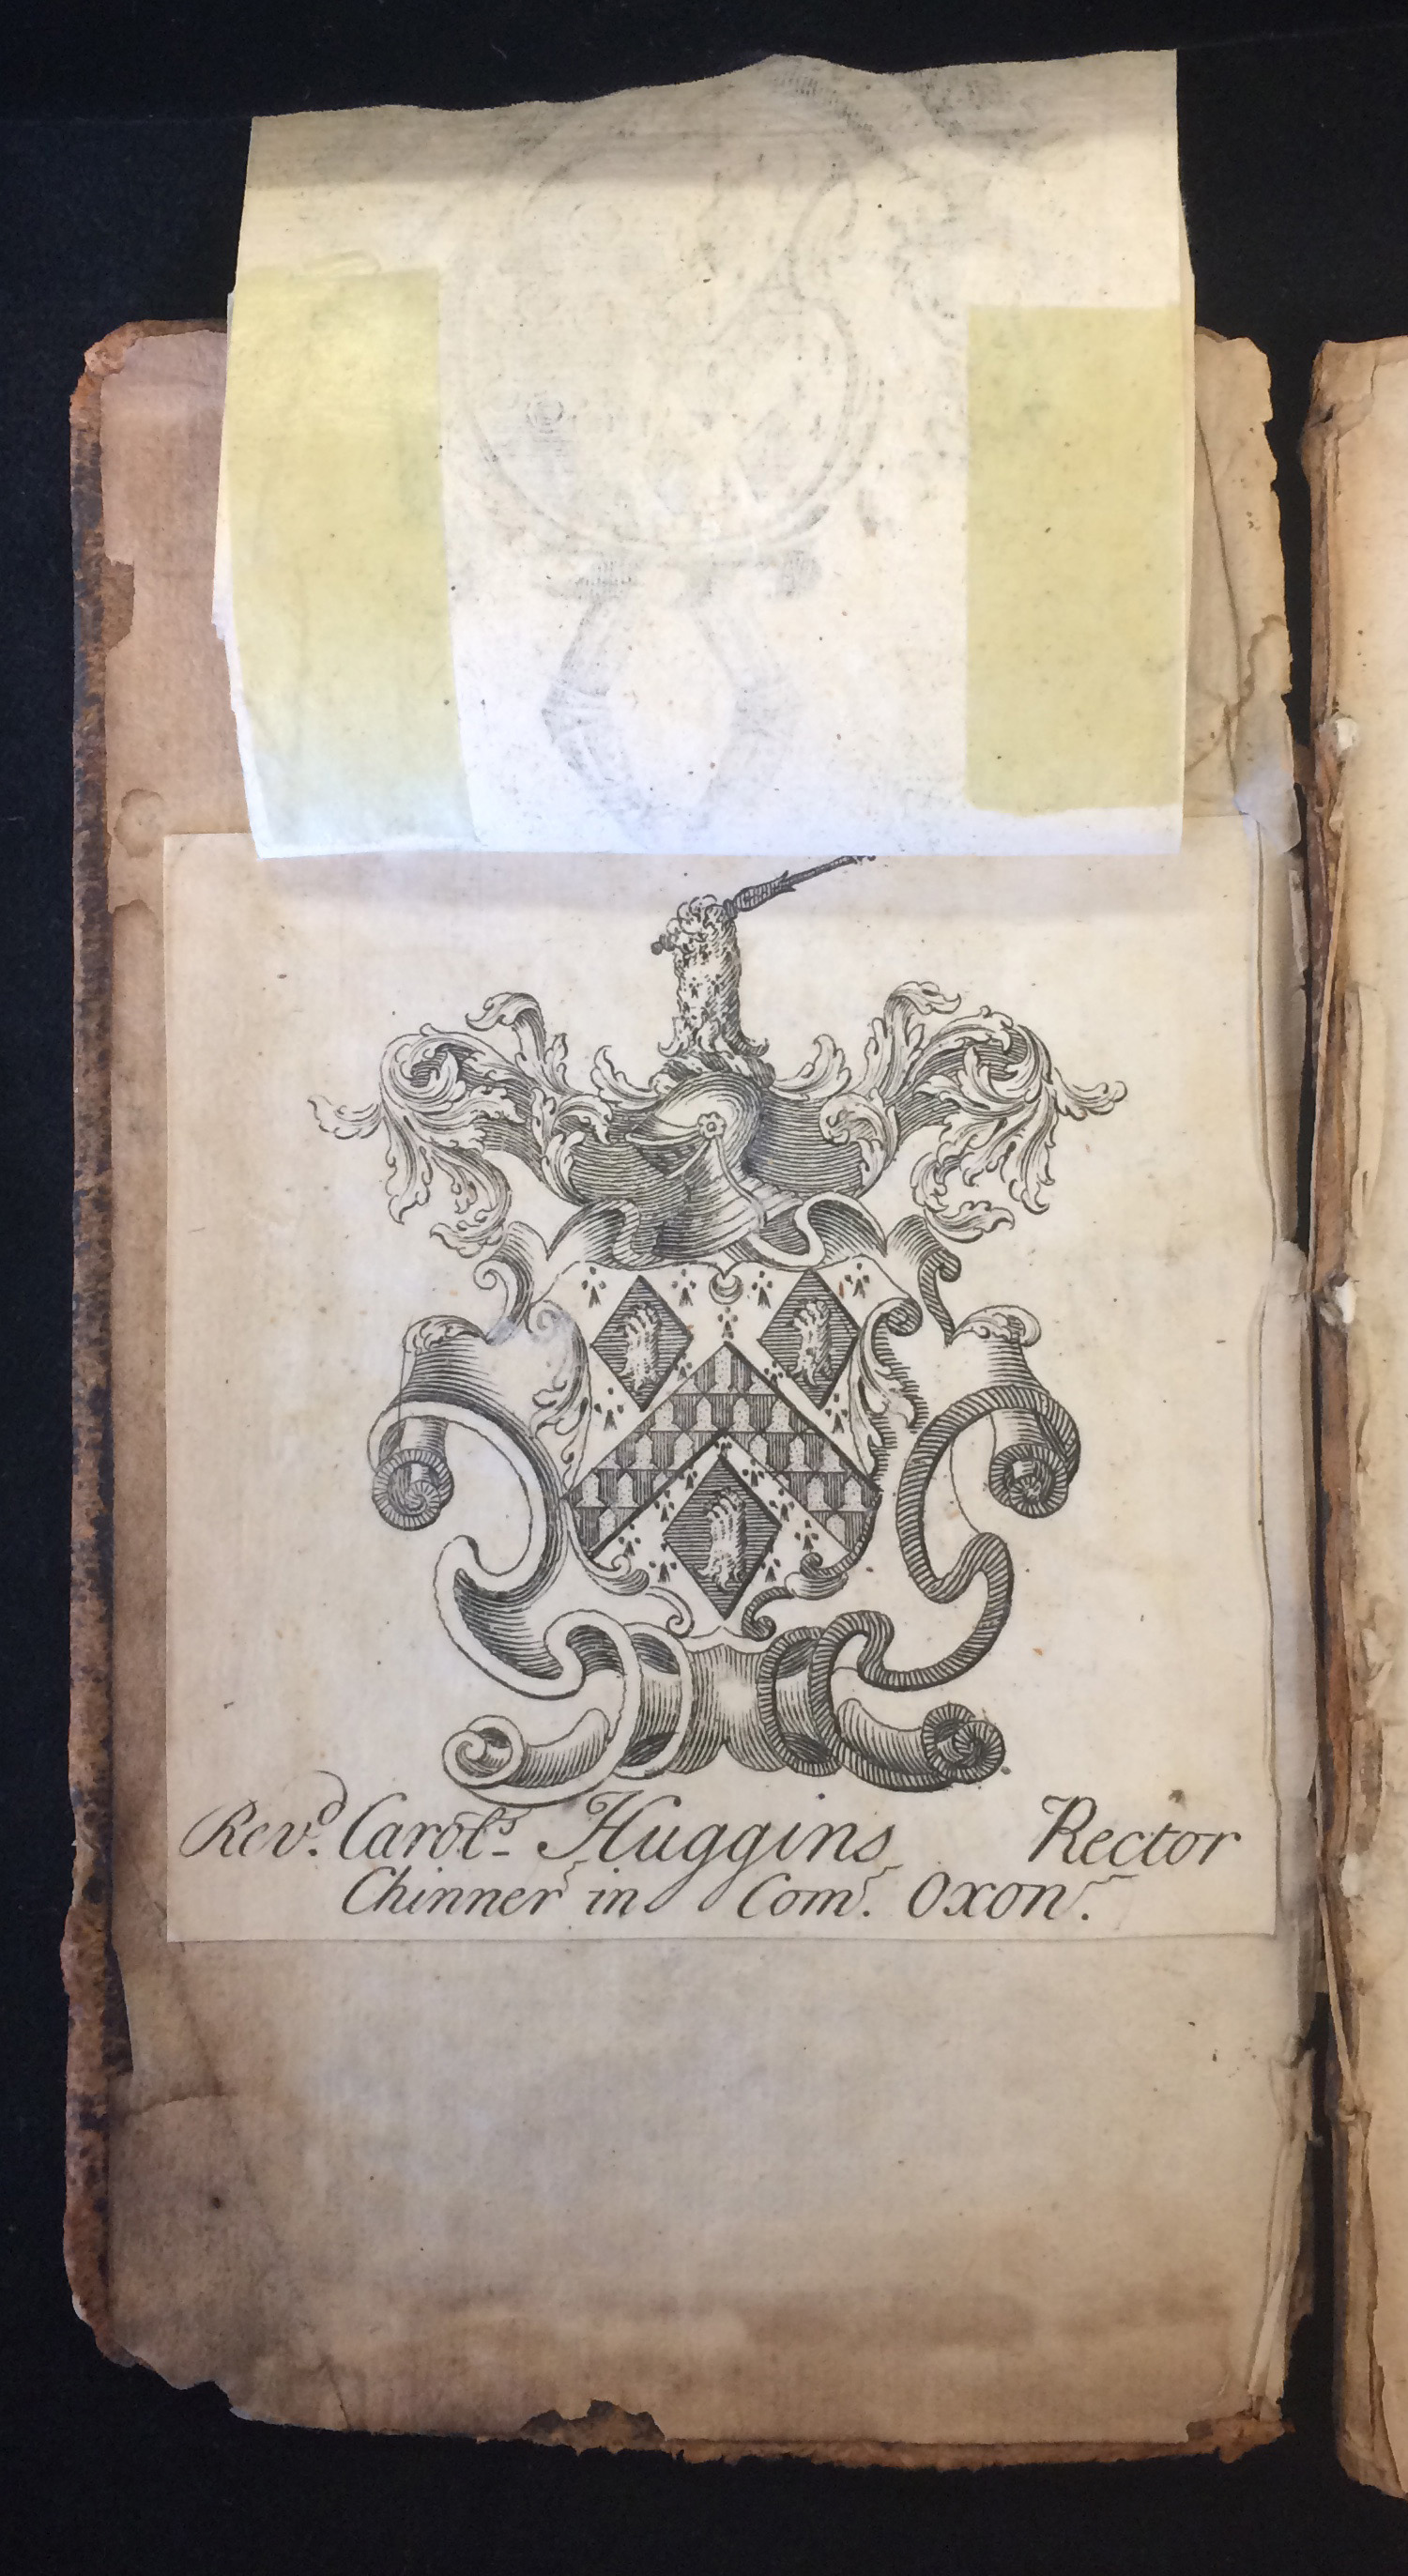 Huggins's Bookplate on front pastedown of Pseudo Ramon Llull. Tractatus brevis et eruditus, de conservatione vitae; Liber secretorum seu quintae essentiae. Straßburg: Lazarus Zetnerus, 1616